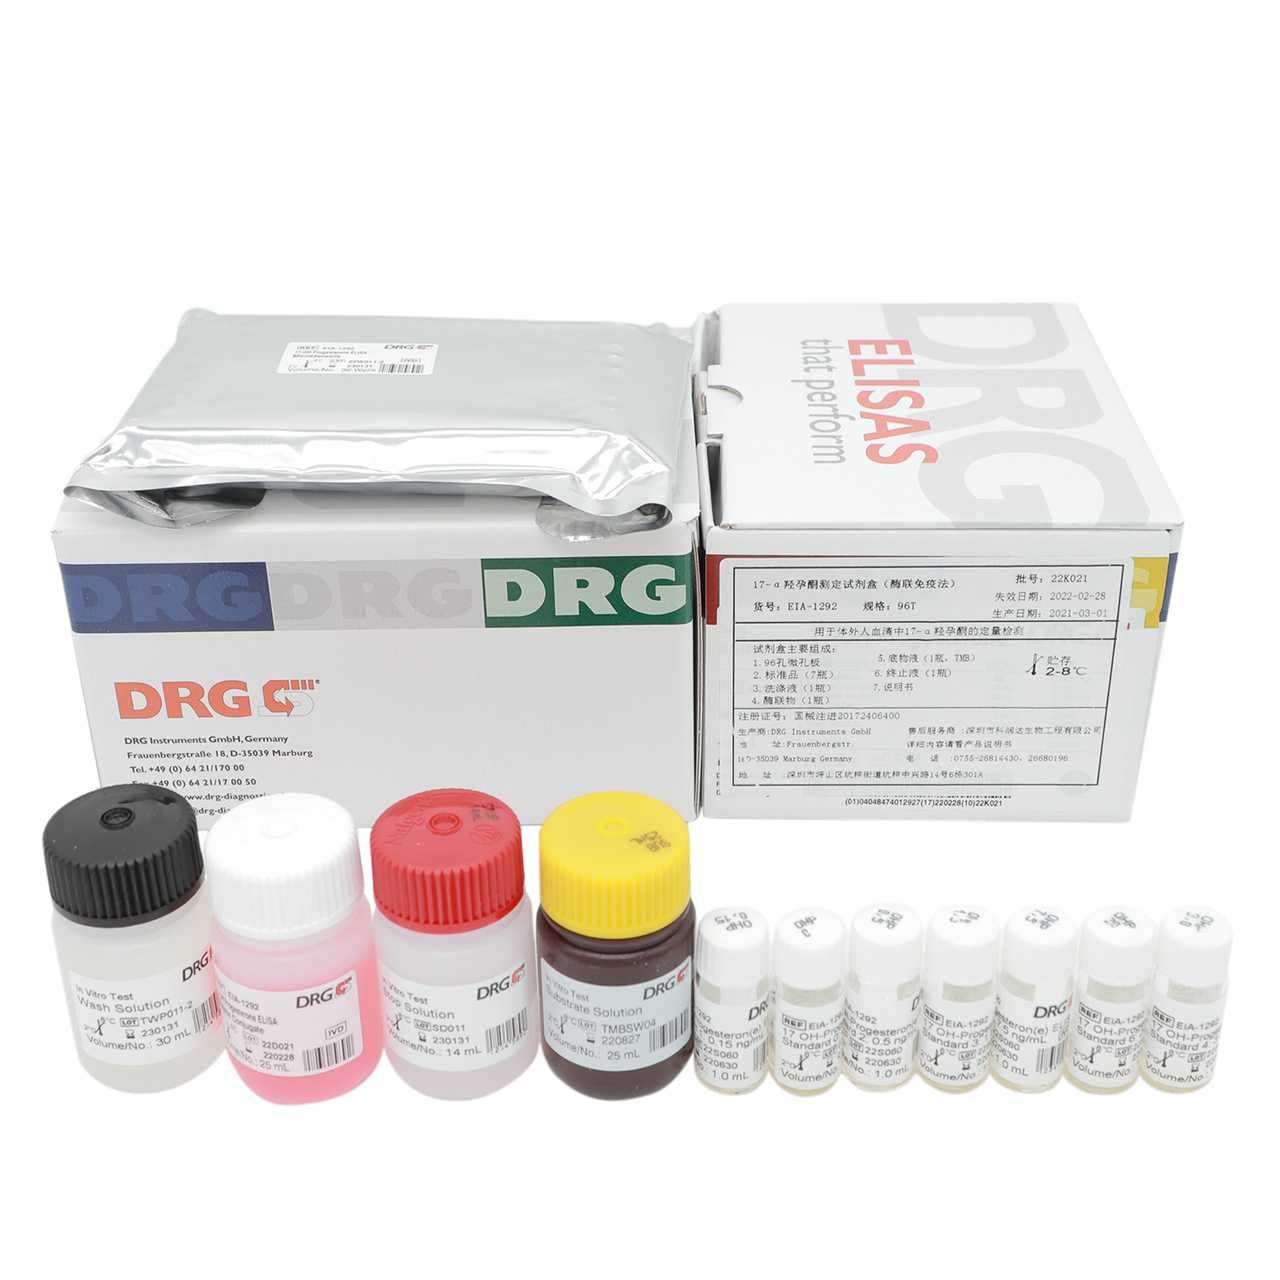 生长激素释放因子(GH-RF)ELISA试剂盒